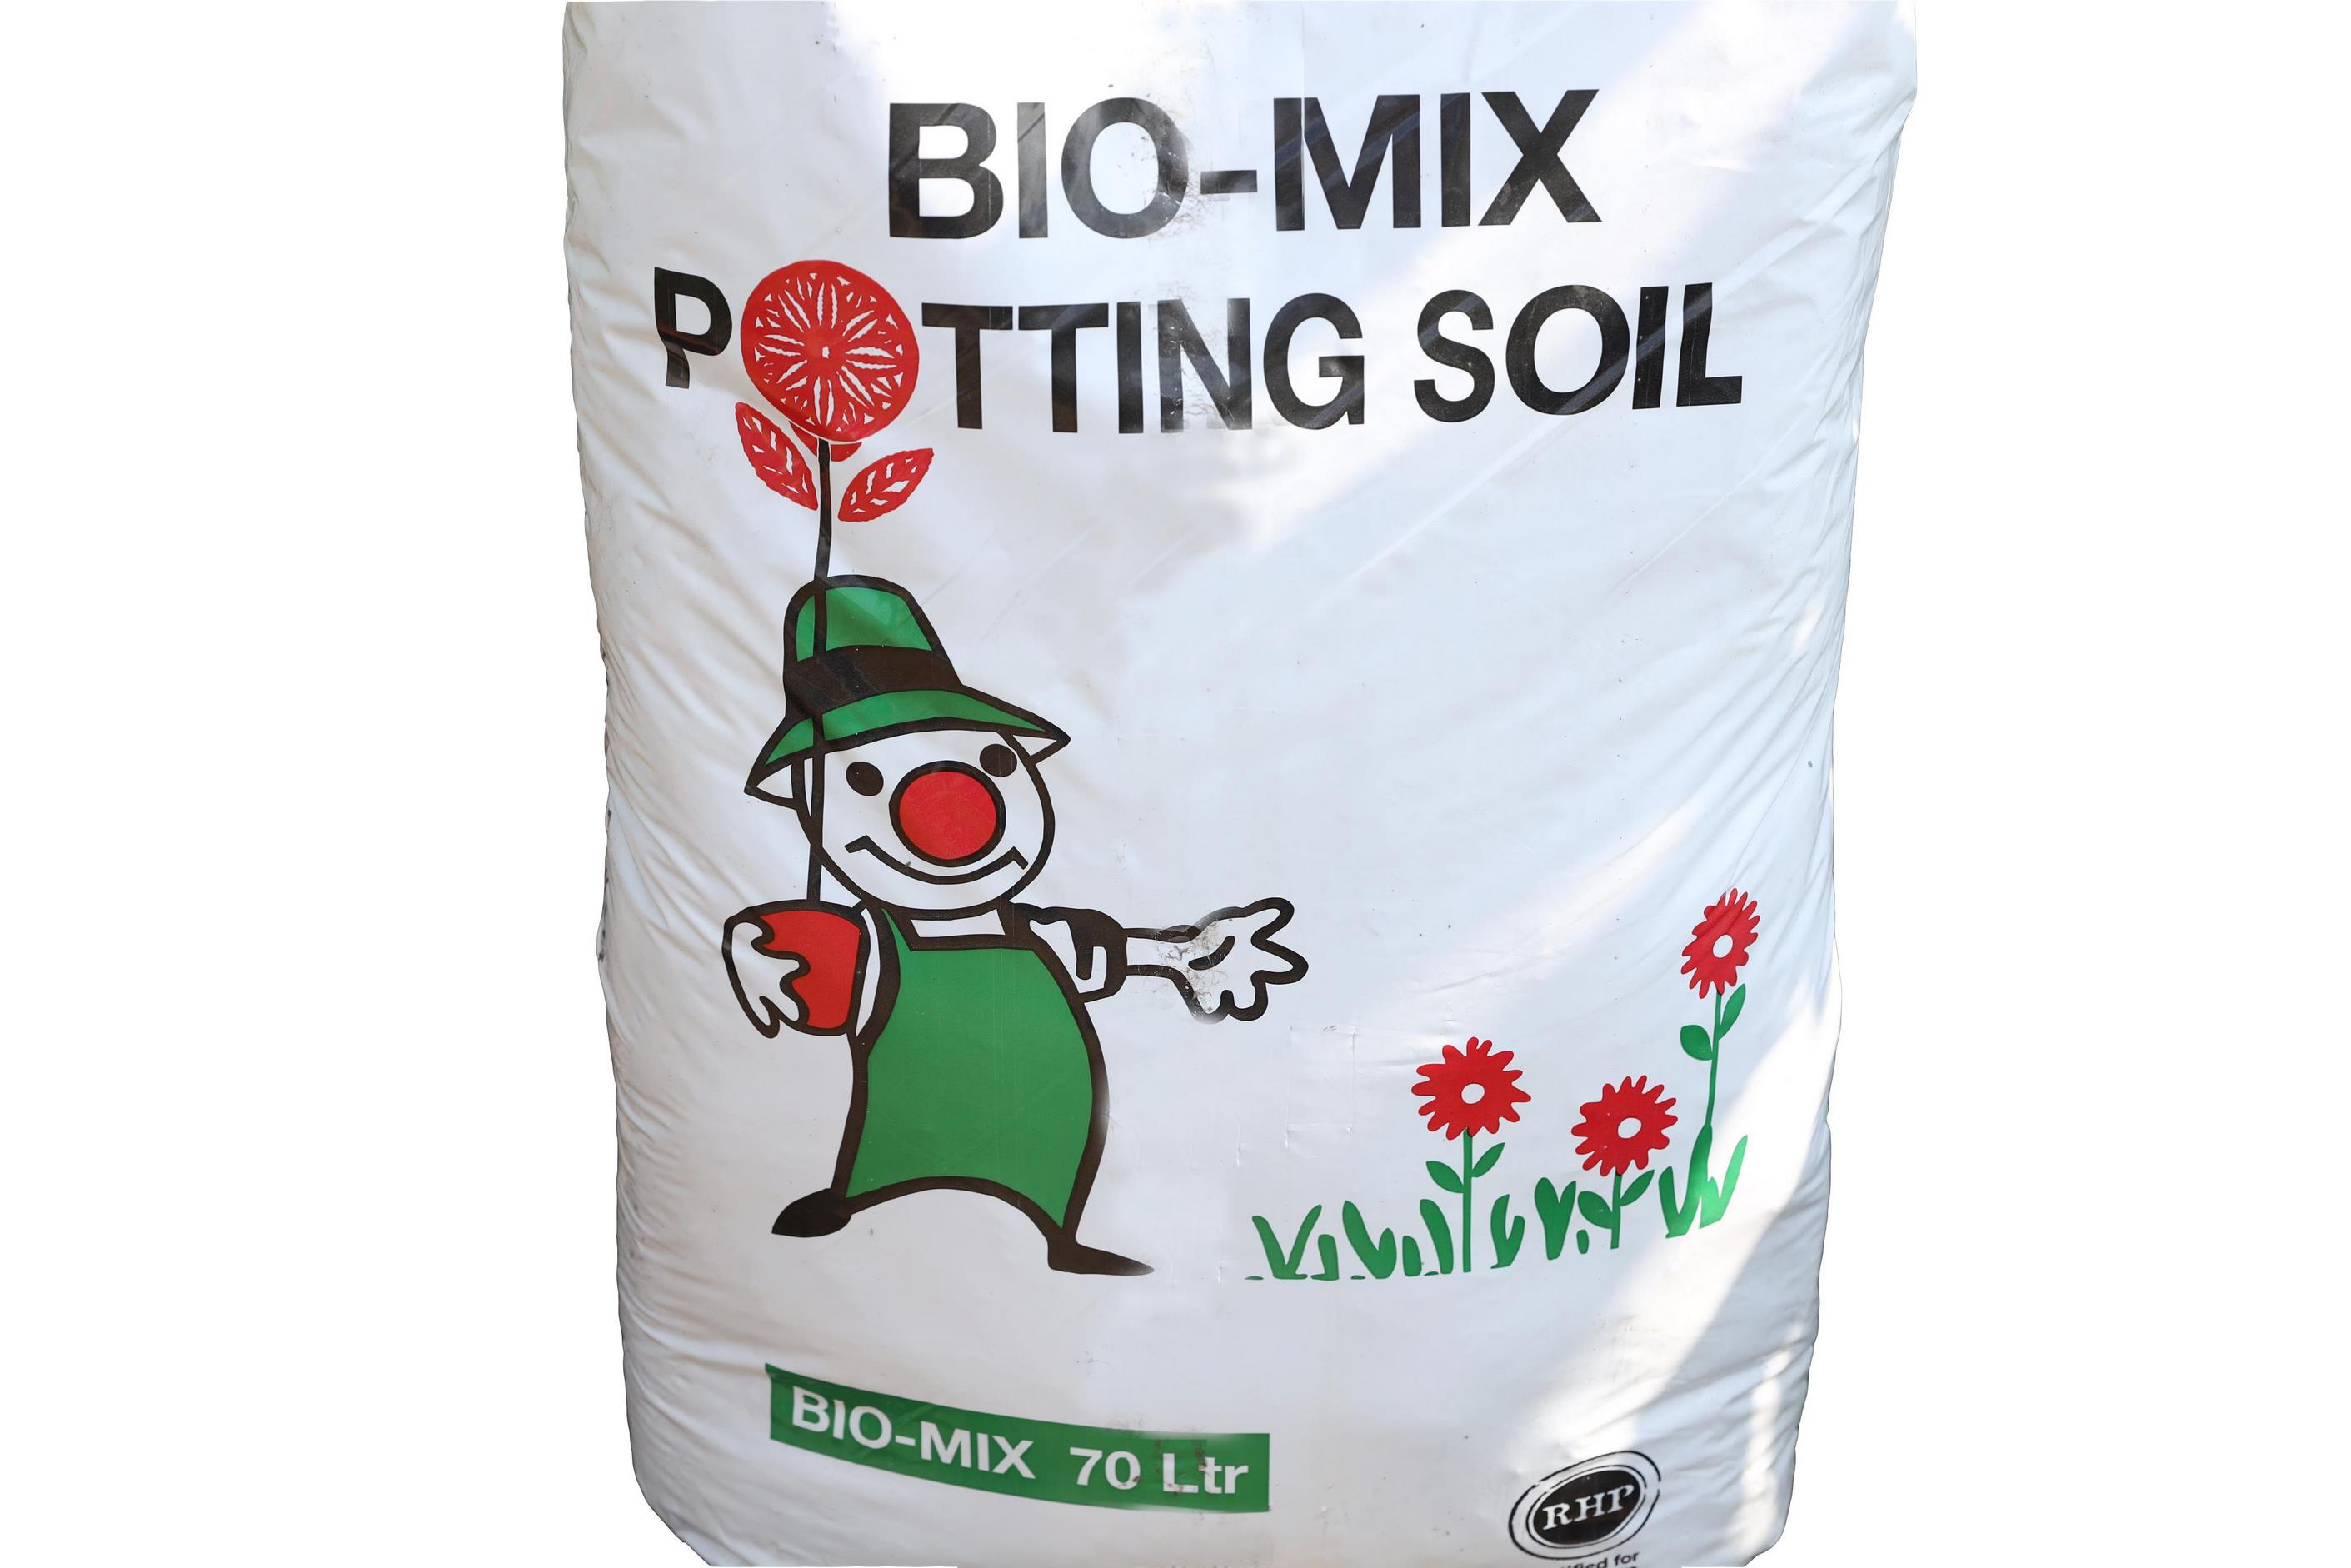 Buy BioMix Potting Online | Agriculture Fertilizers | Qetaat.com